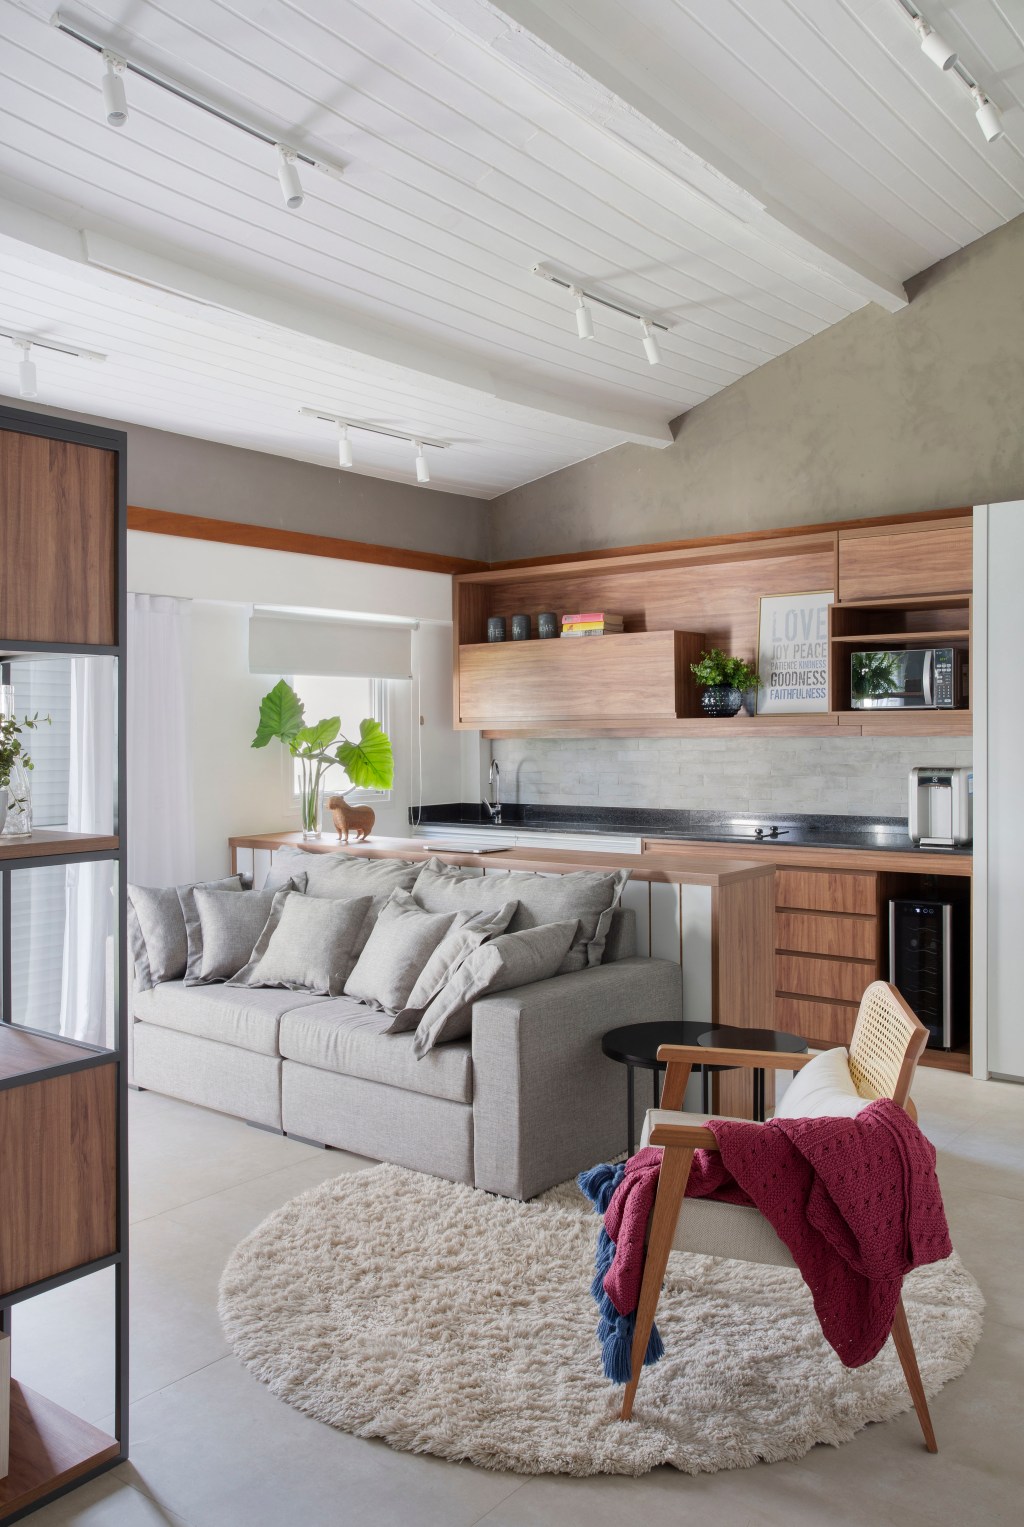 Casa de praia de 420 m² ganha estilo urbano e loft na garagem. Projeto Studio 021 Arquitetura. Na foto, espaço gourmet com marcenaria planejada e frigobar,